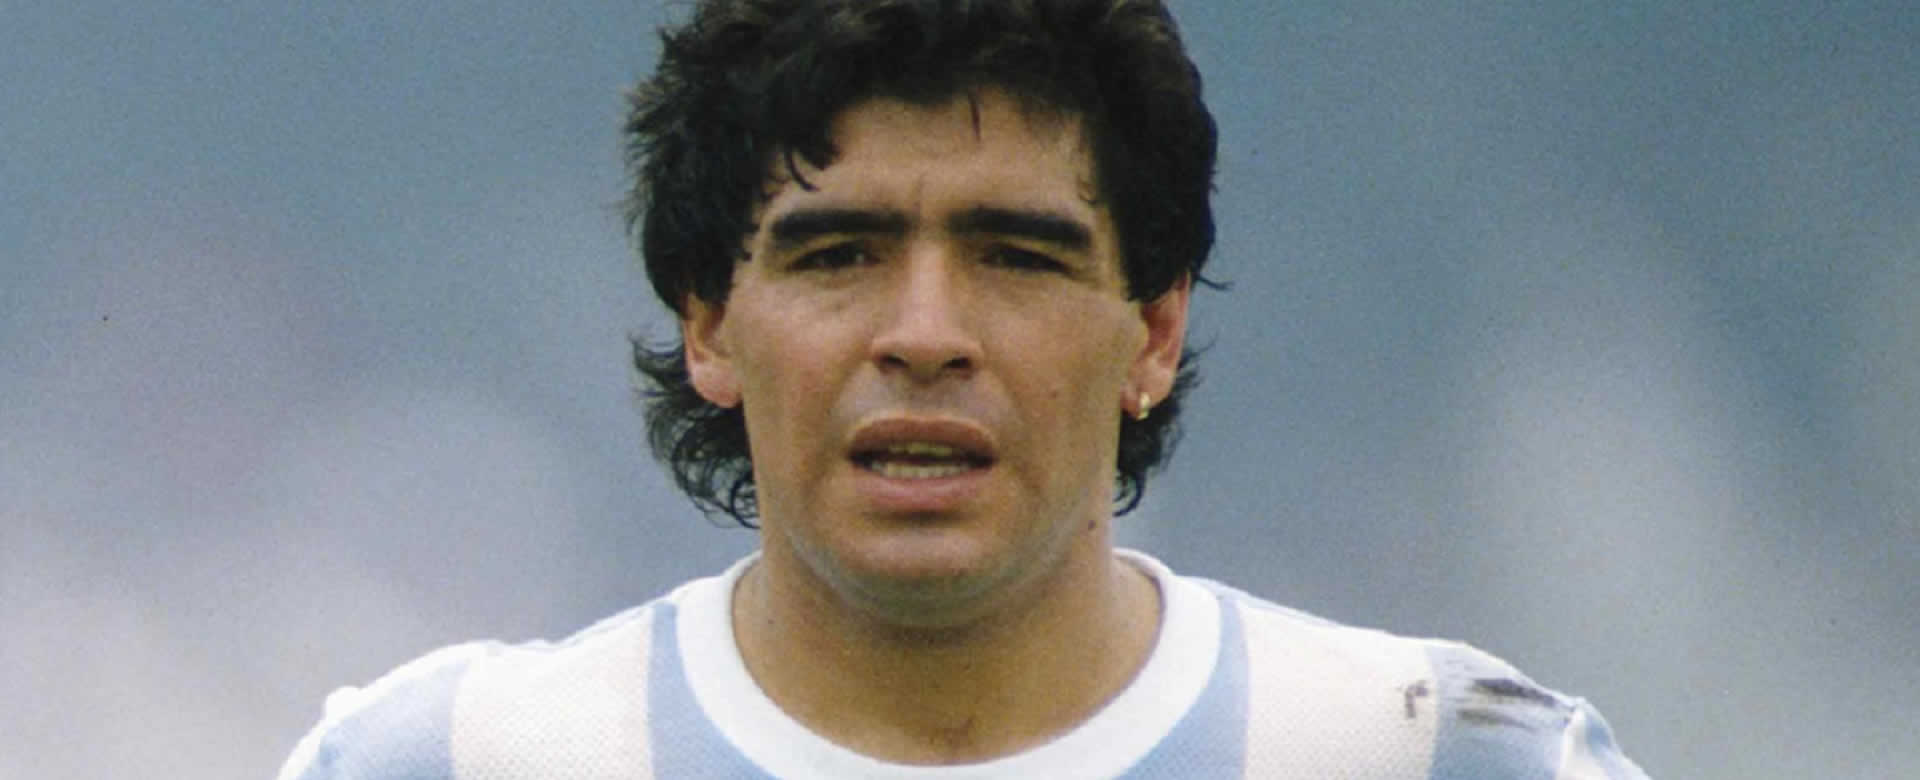 Estado Unido le niega la visa nuevamente a Maradona